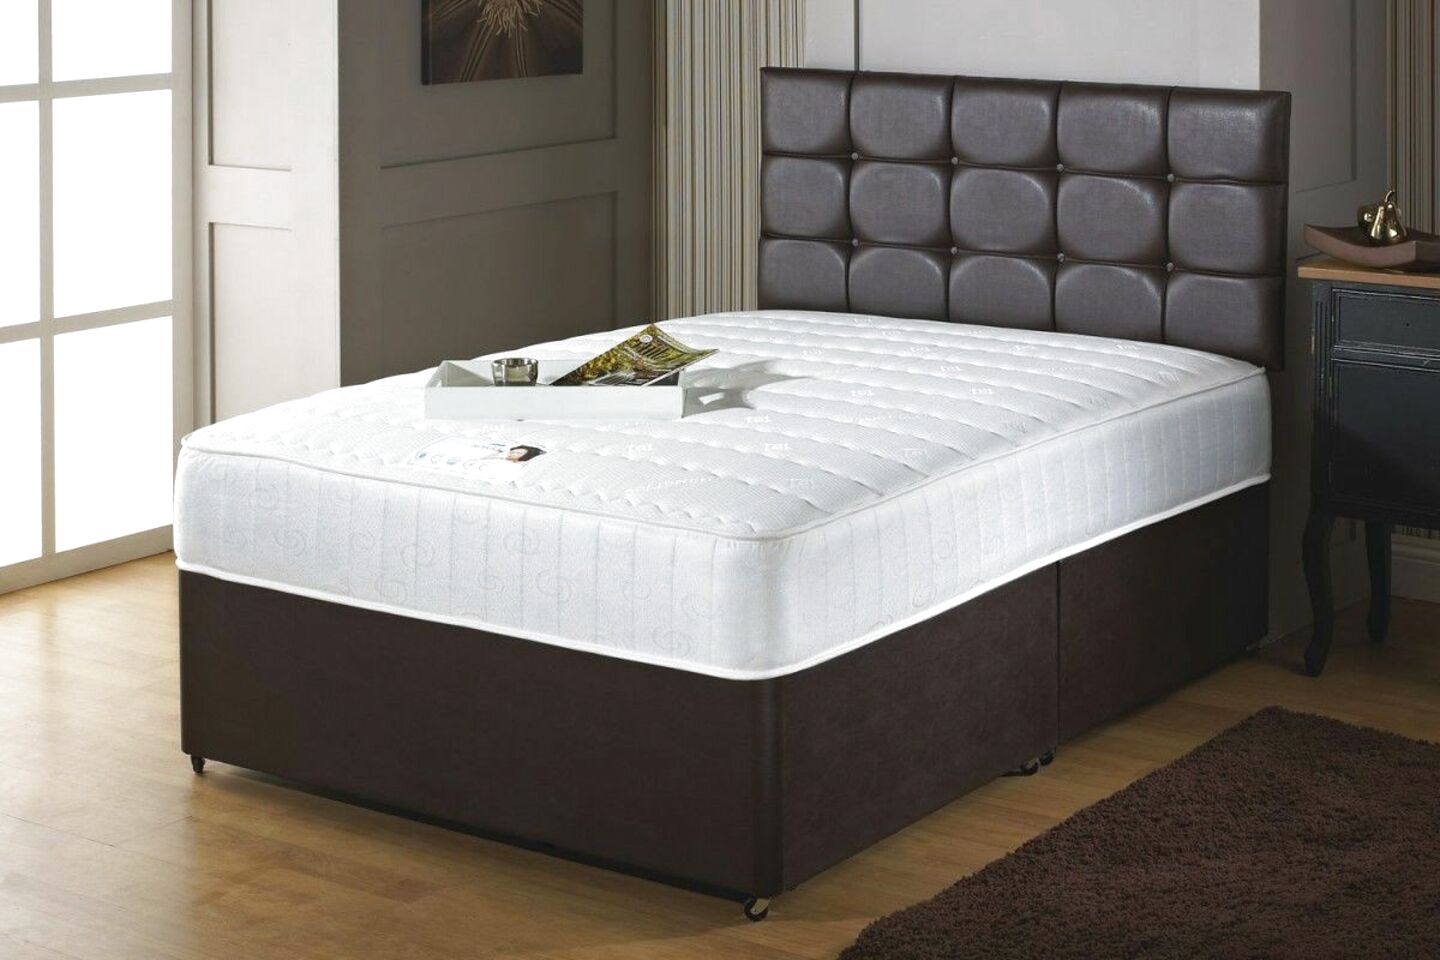 mattress on sale uk